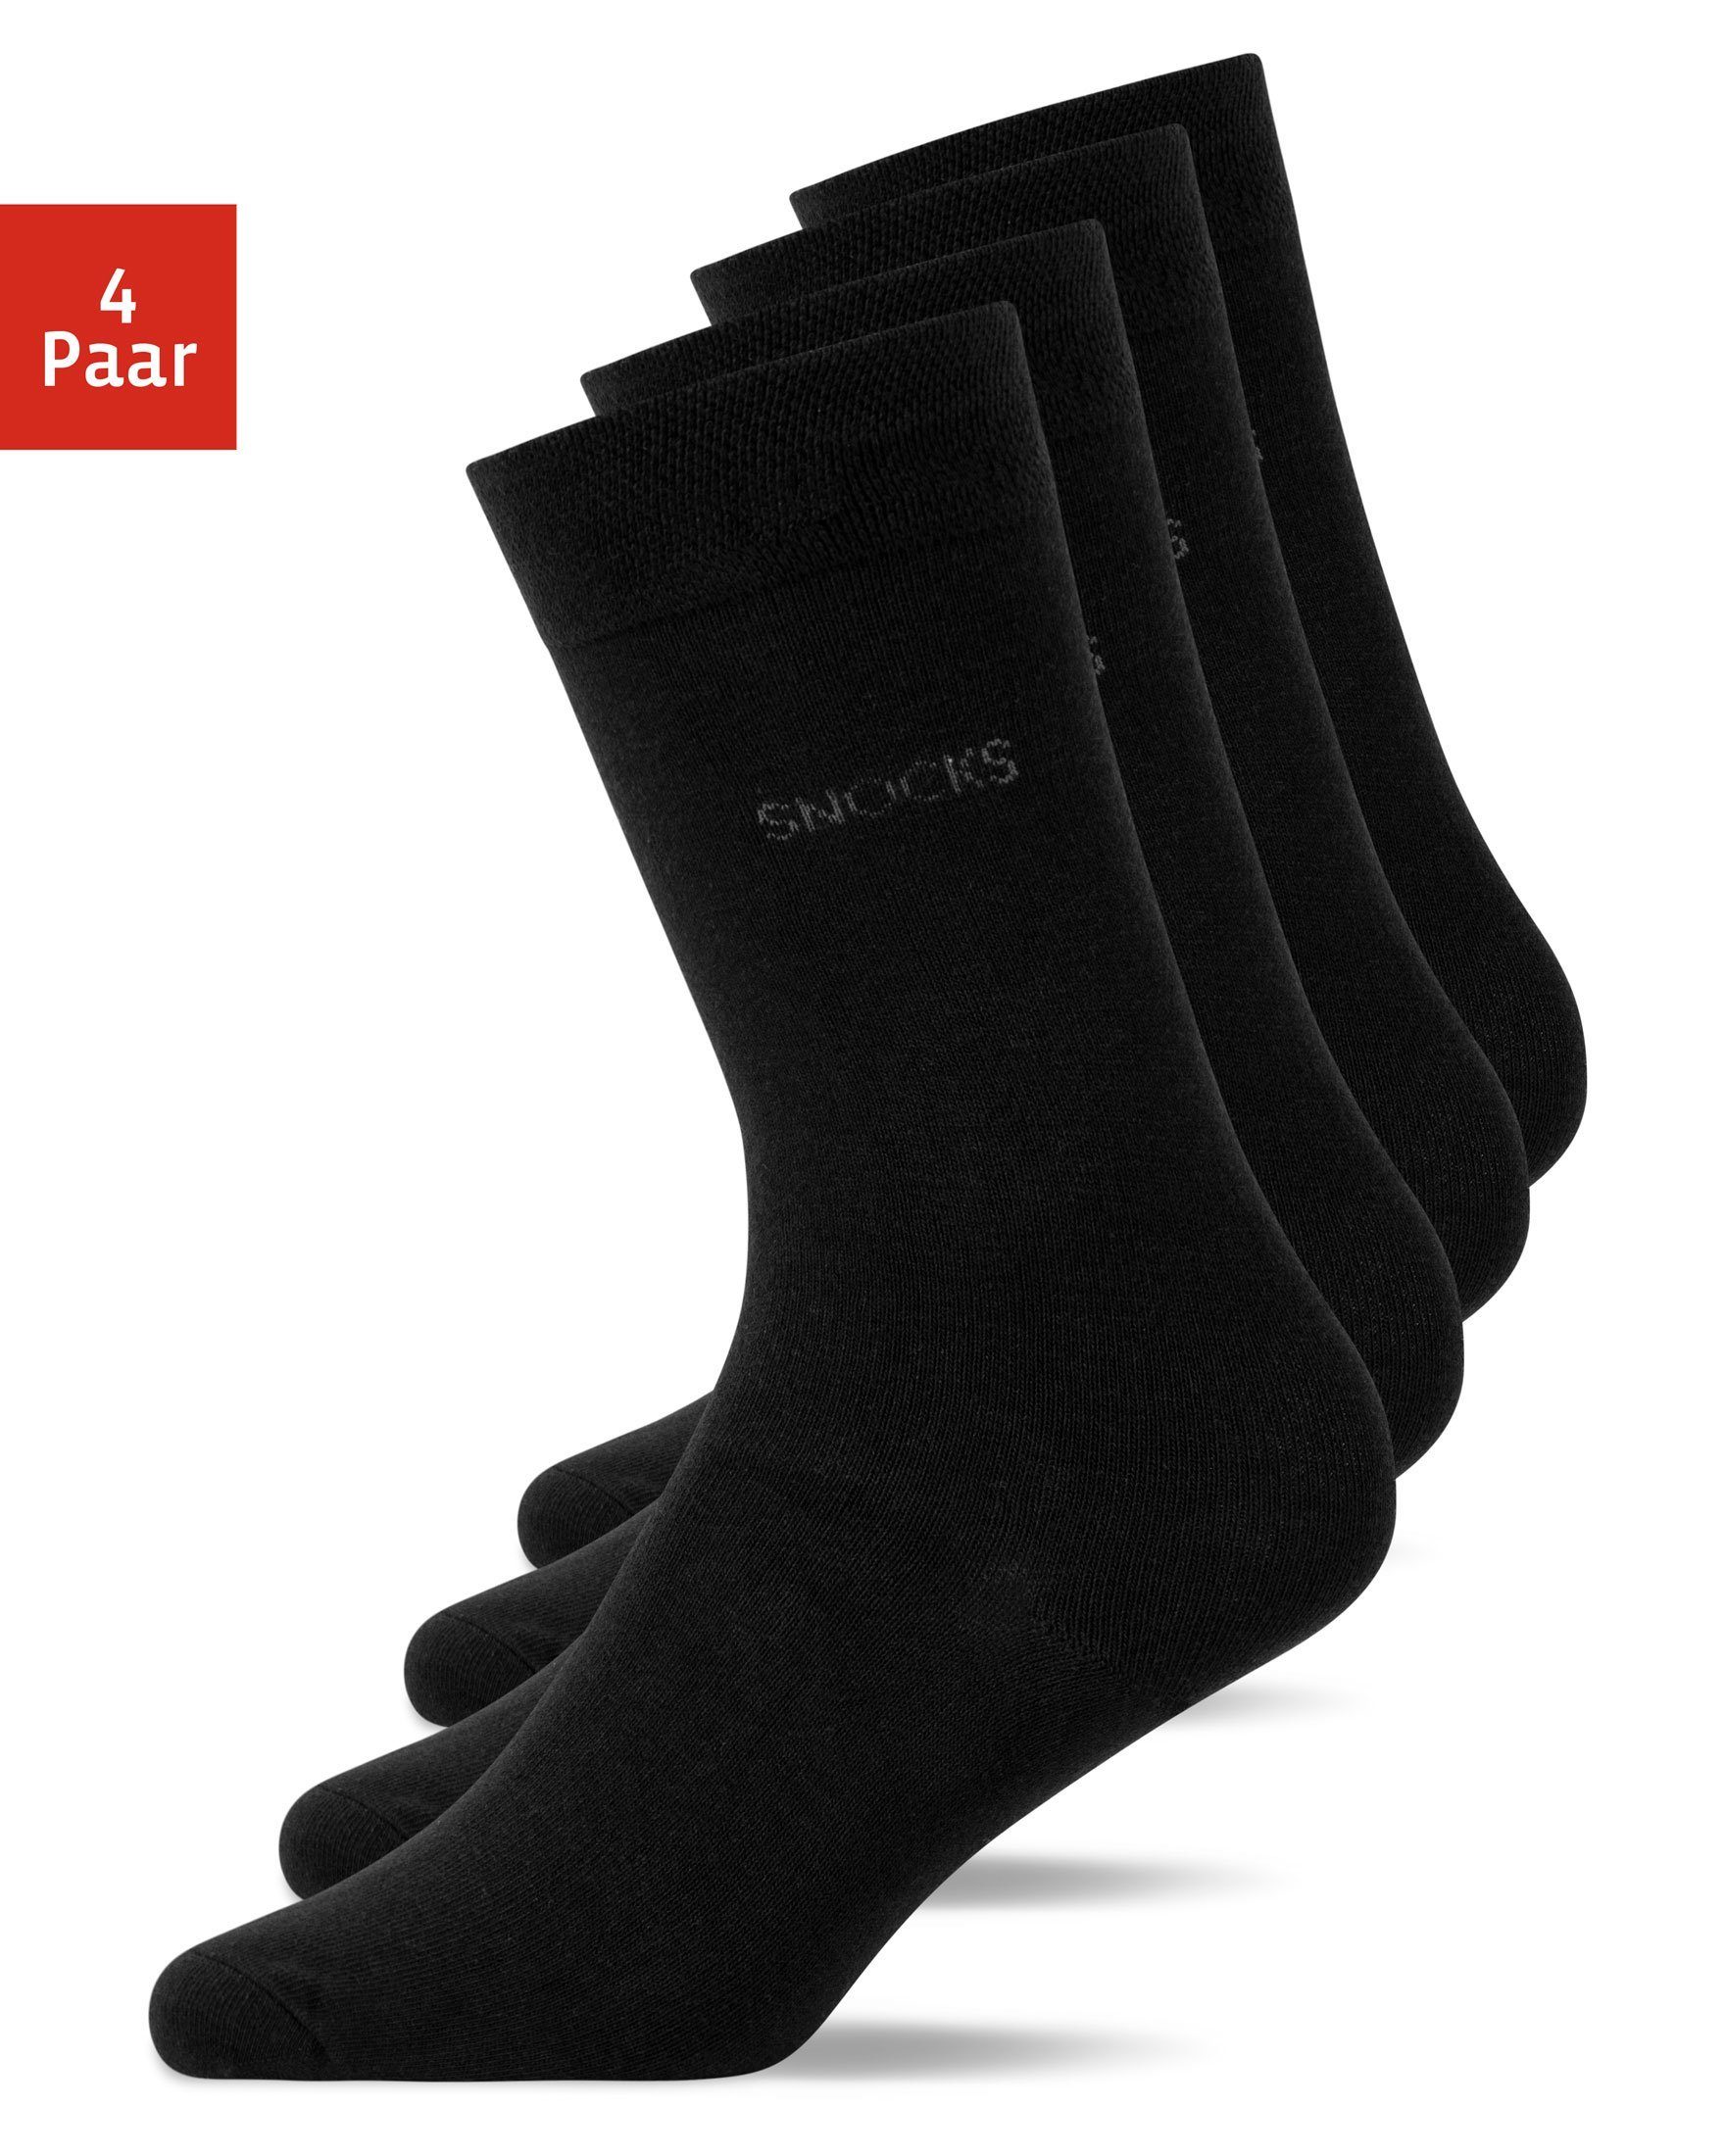 SNOCKS Businesssocken Business Socken (4-Paar) aus Bio-Baumwolle, für jeden Anzug geeignet 01 Schwarz